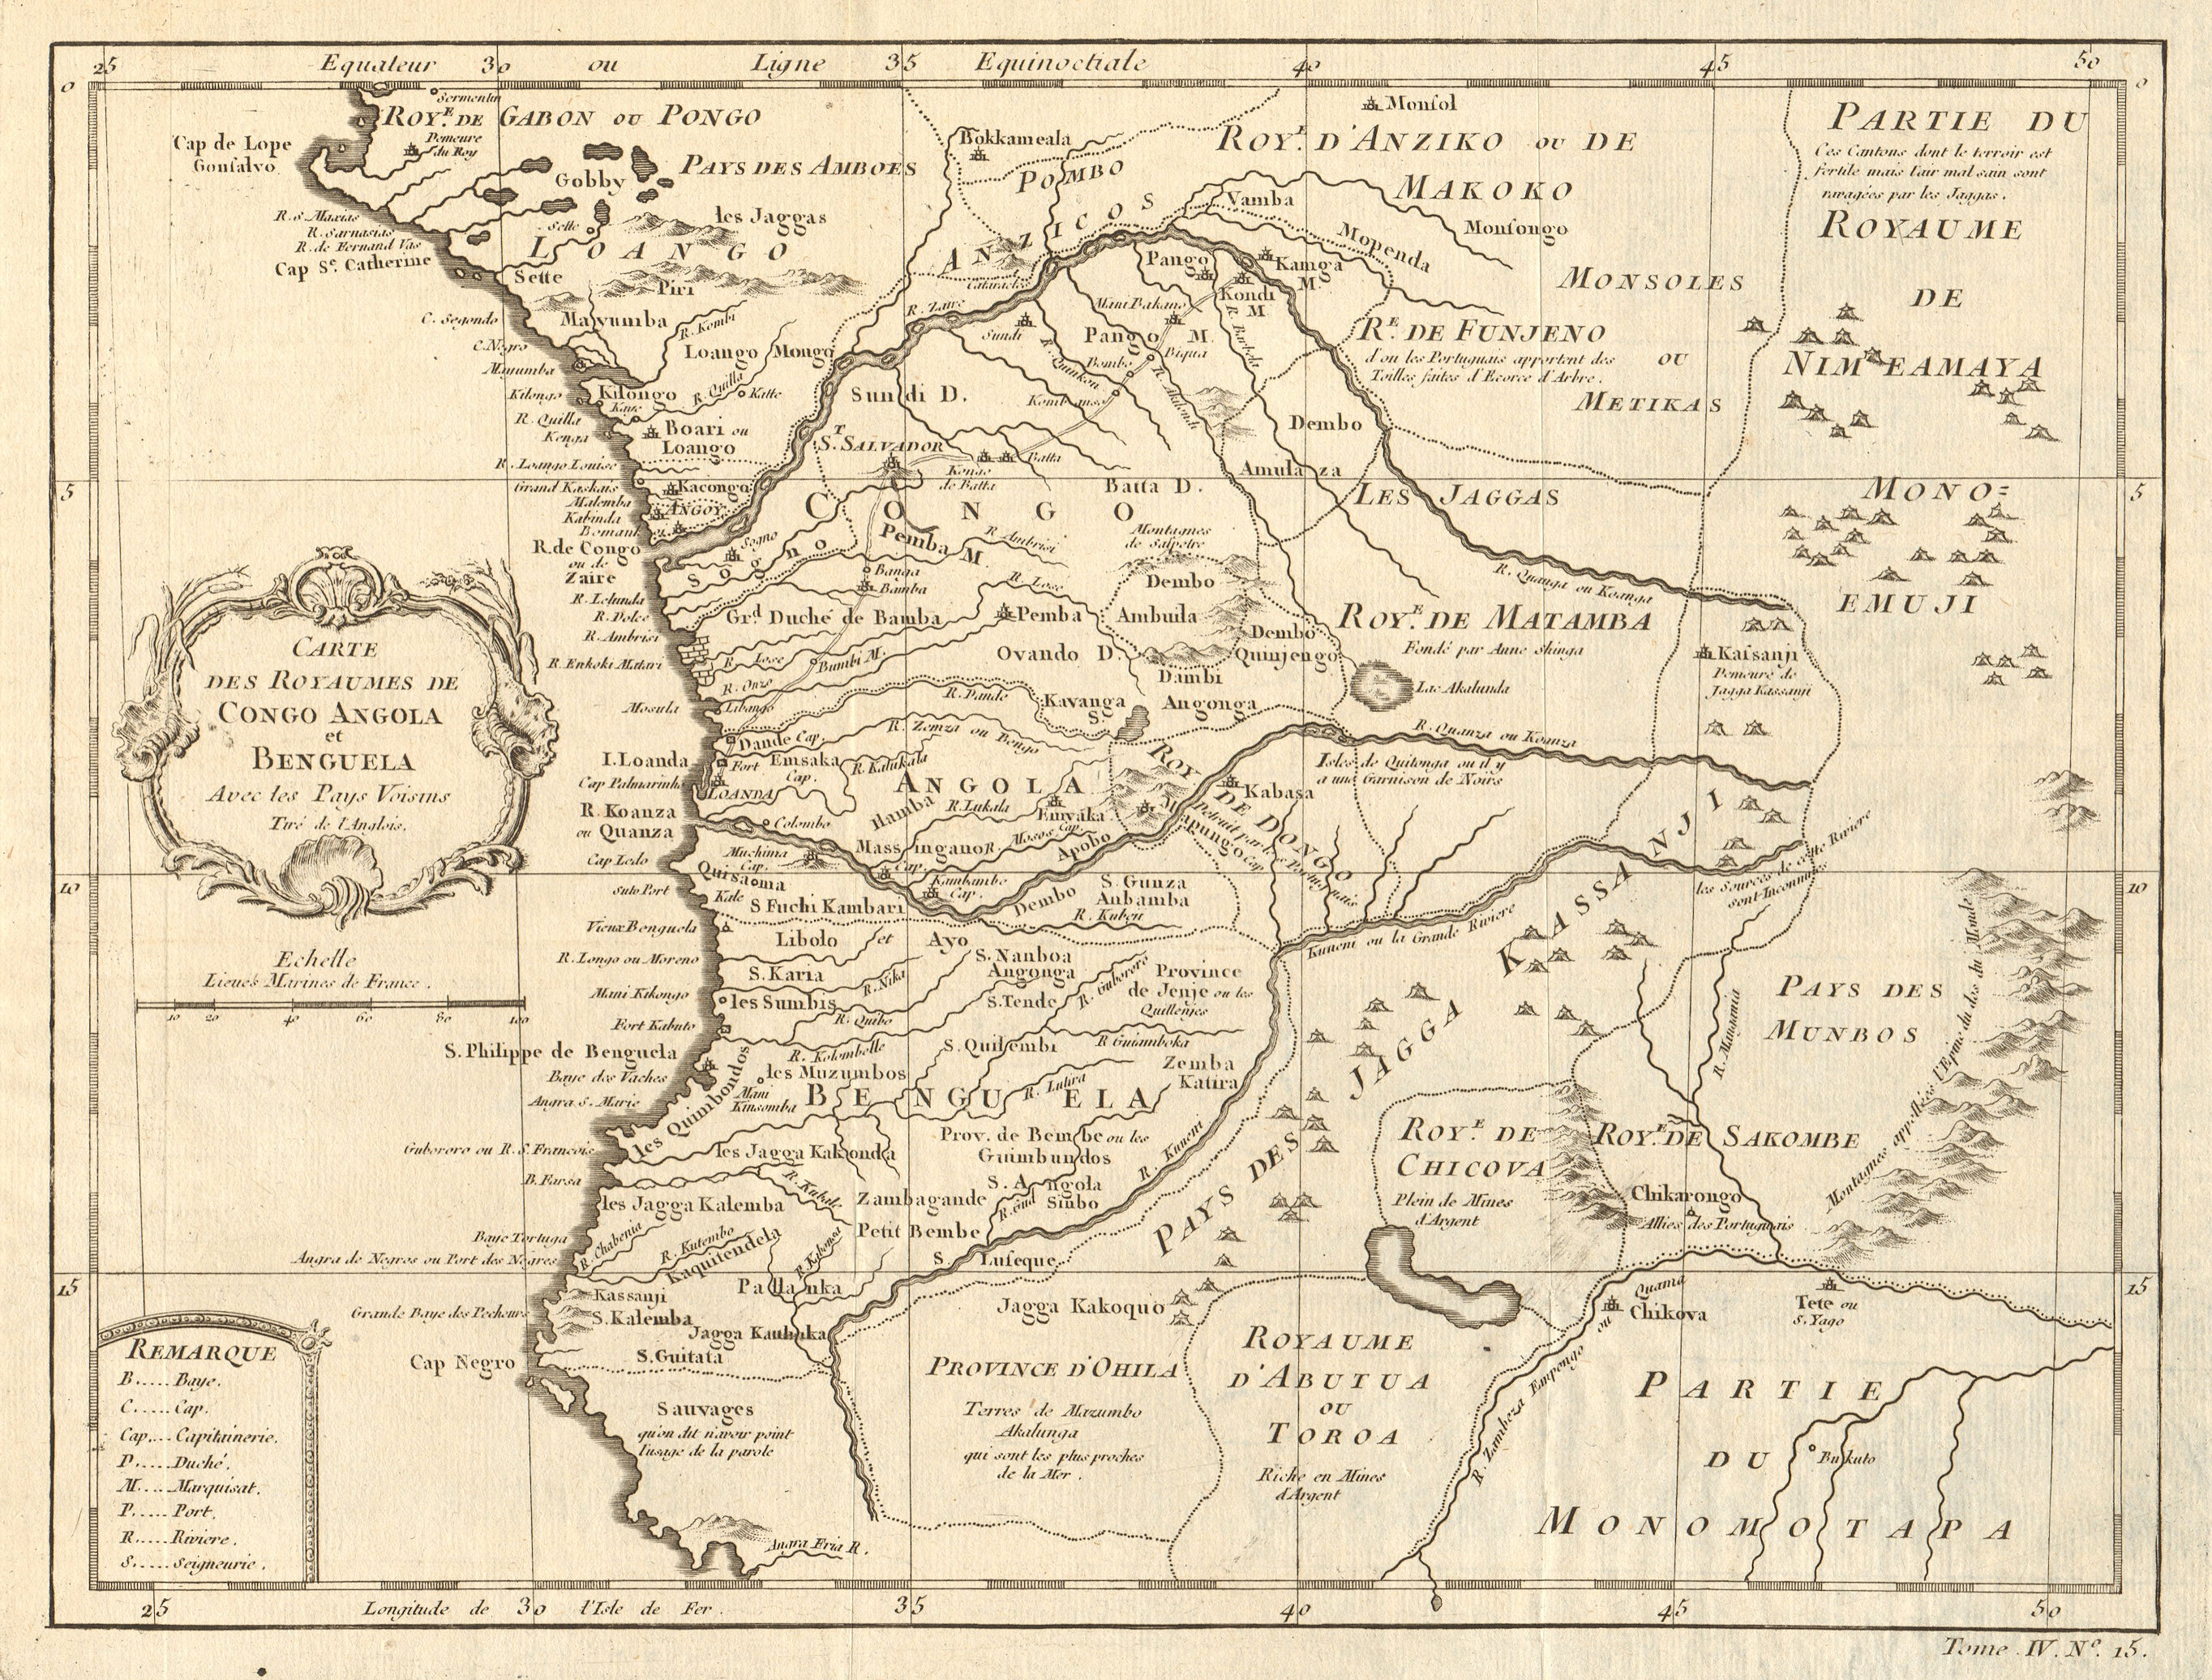 Associate Product 'Carte des Royaumes de Congo, Angola et Benguela' & Gabon Africa BELLIN 1747 map